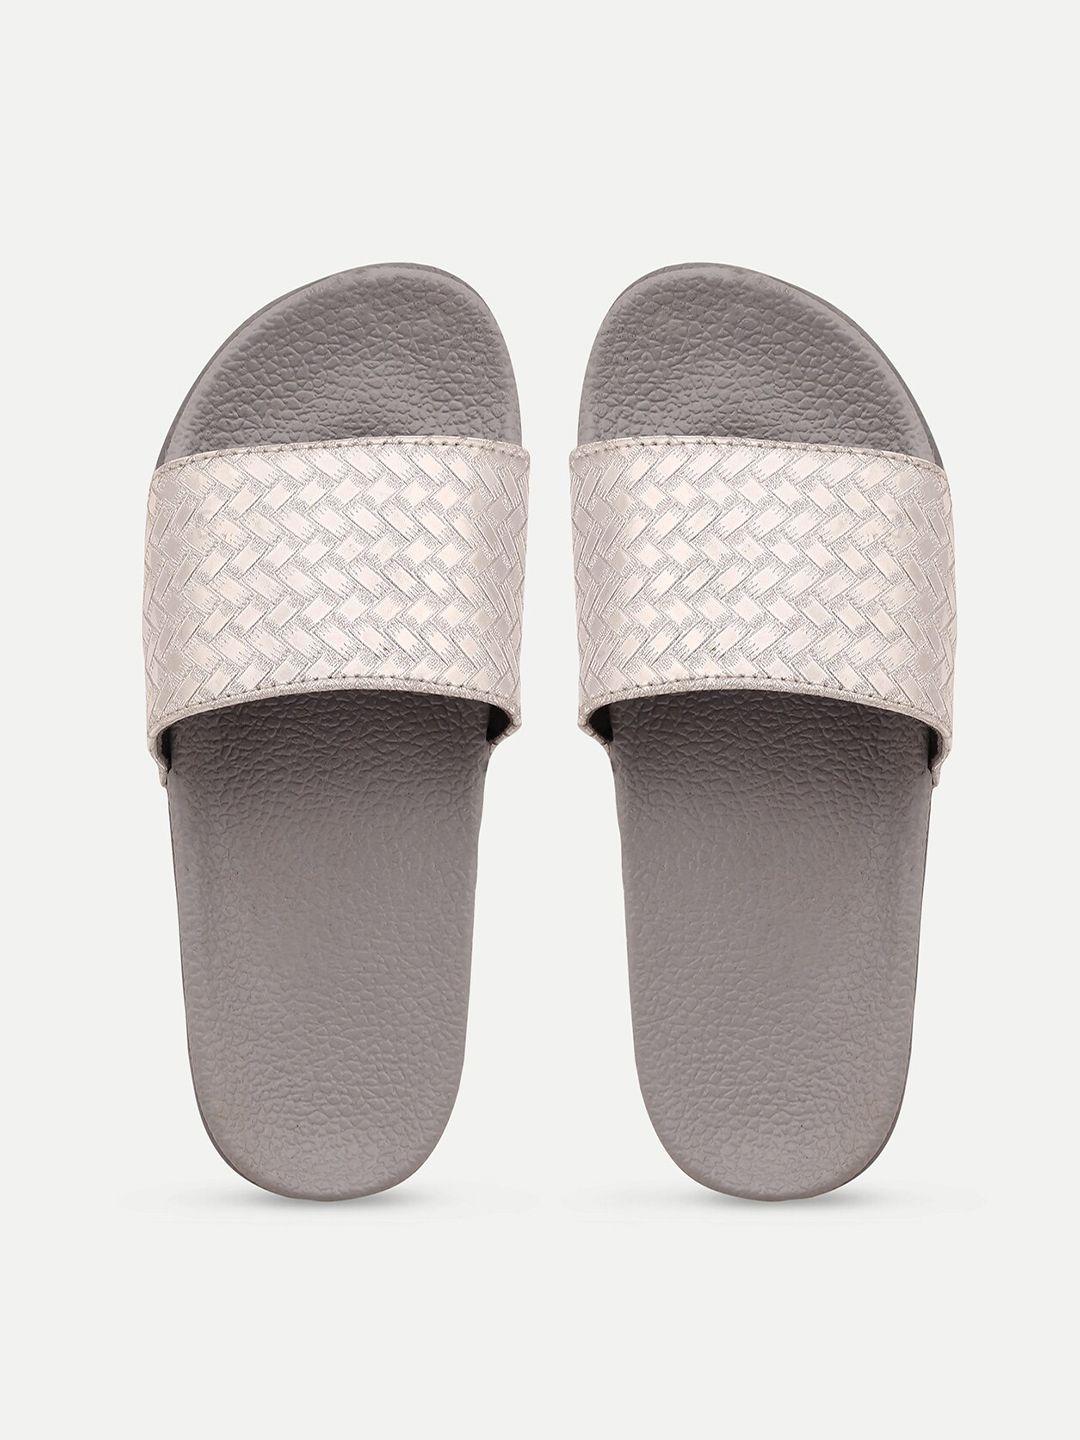 amaclass women's fashion flip flops slippers-silver